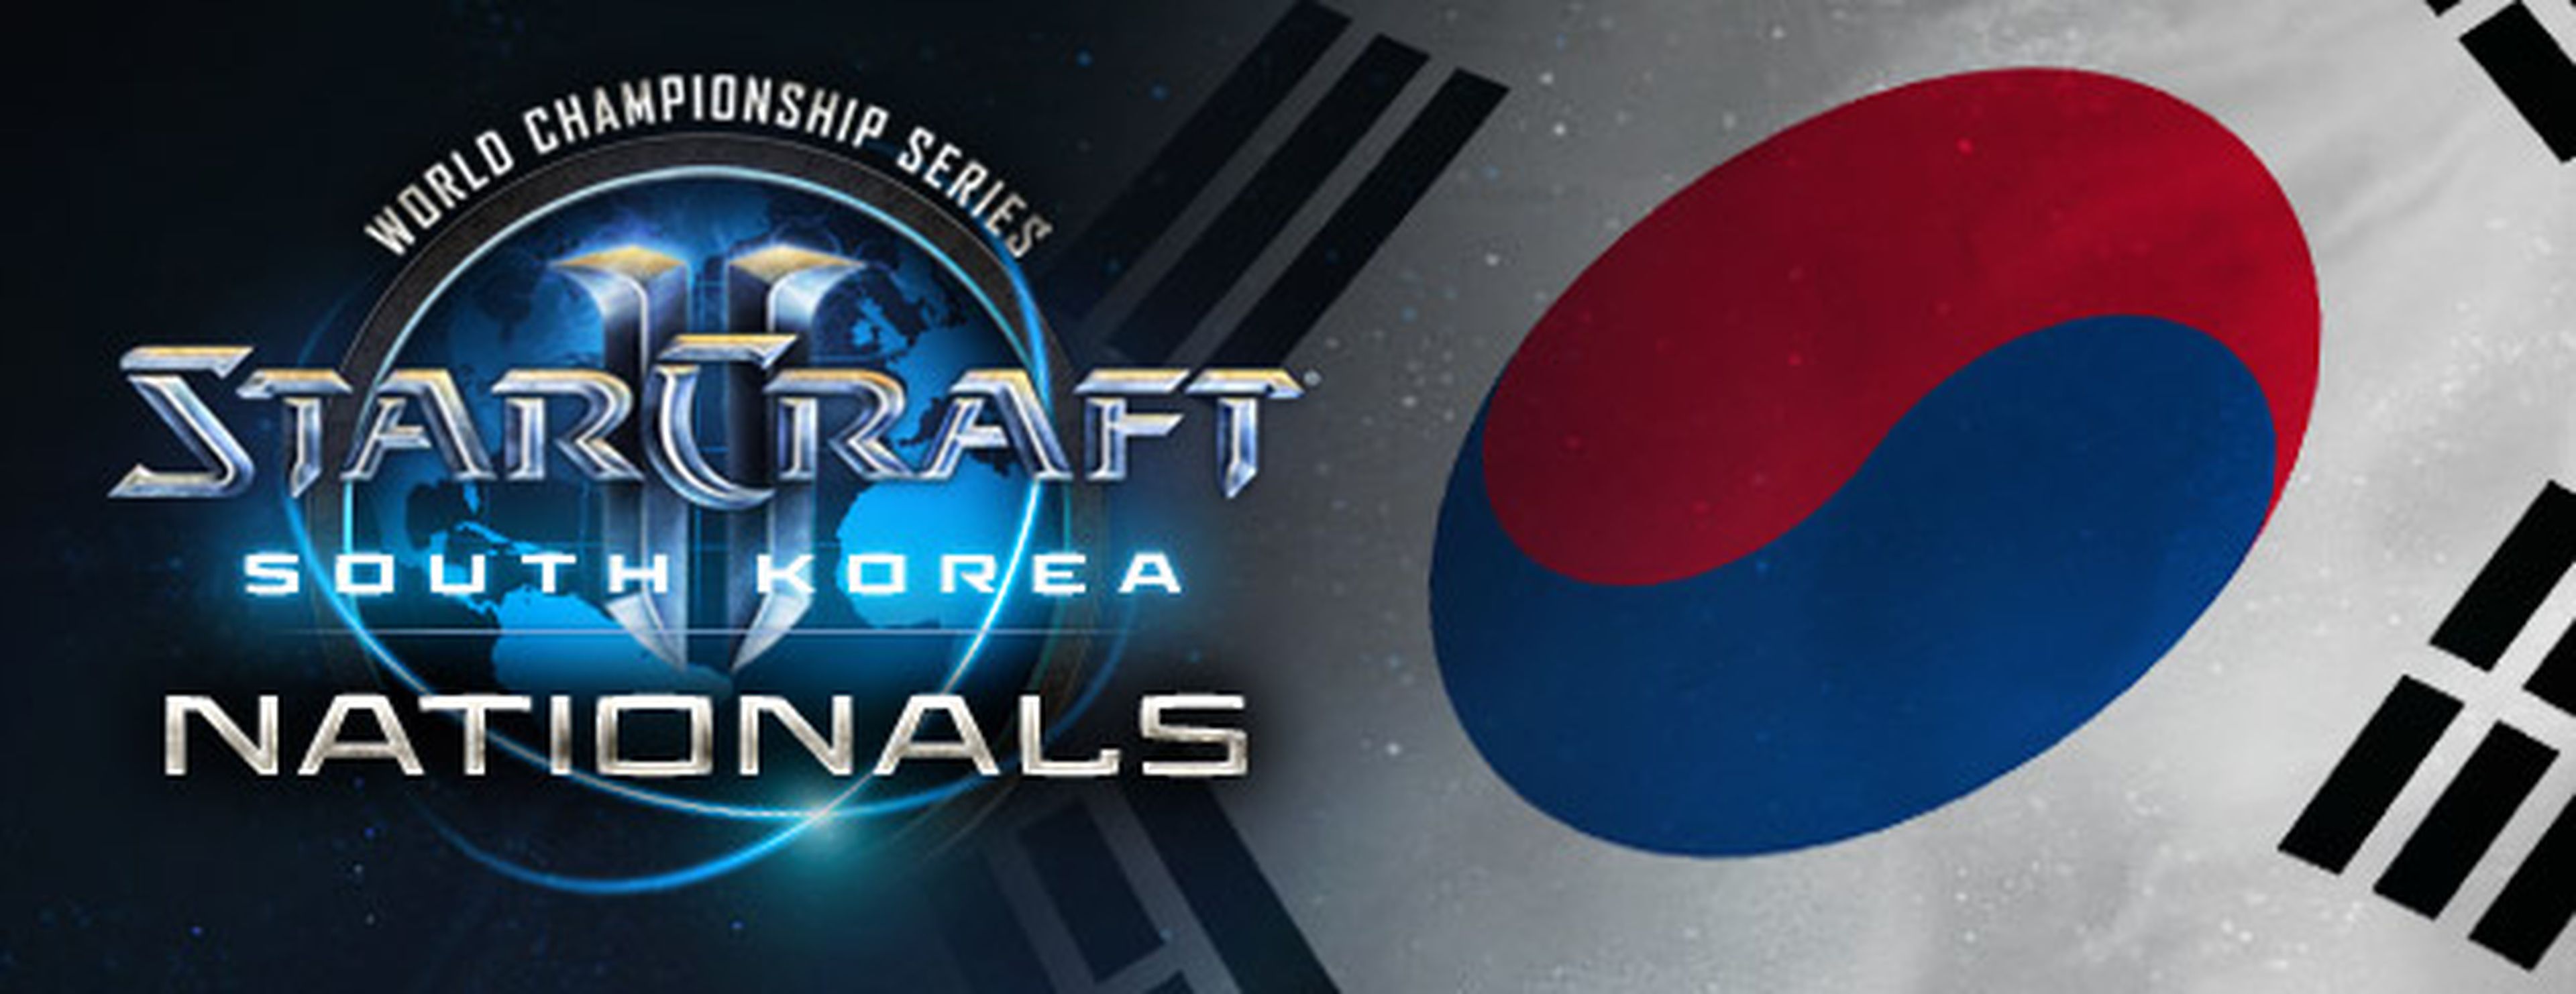 En Corea del Sur, Starcraft 2 es el deporte nacional. ¿Veremos algo así algún día en nuestro país?